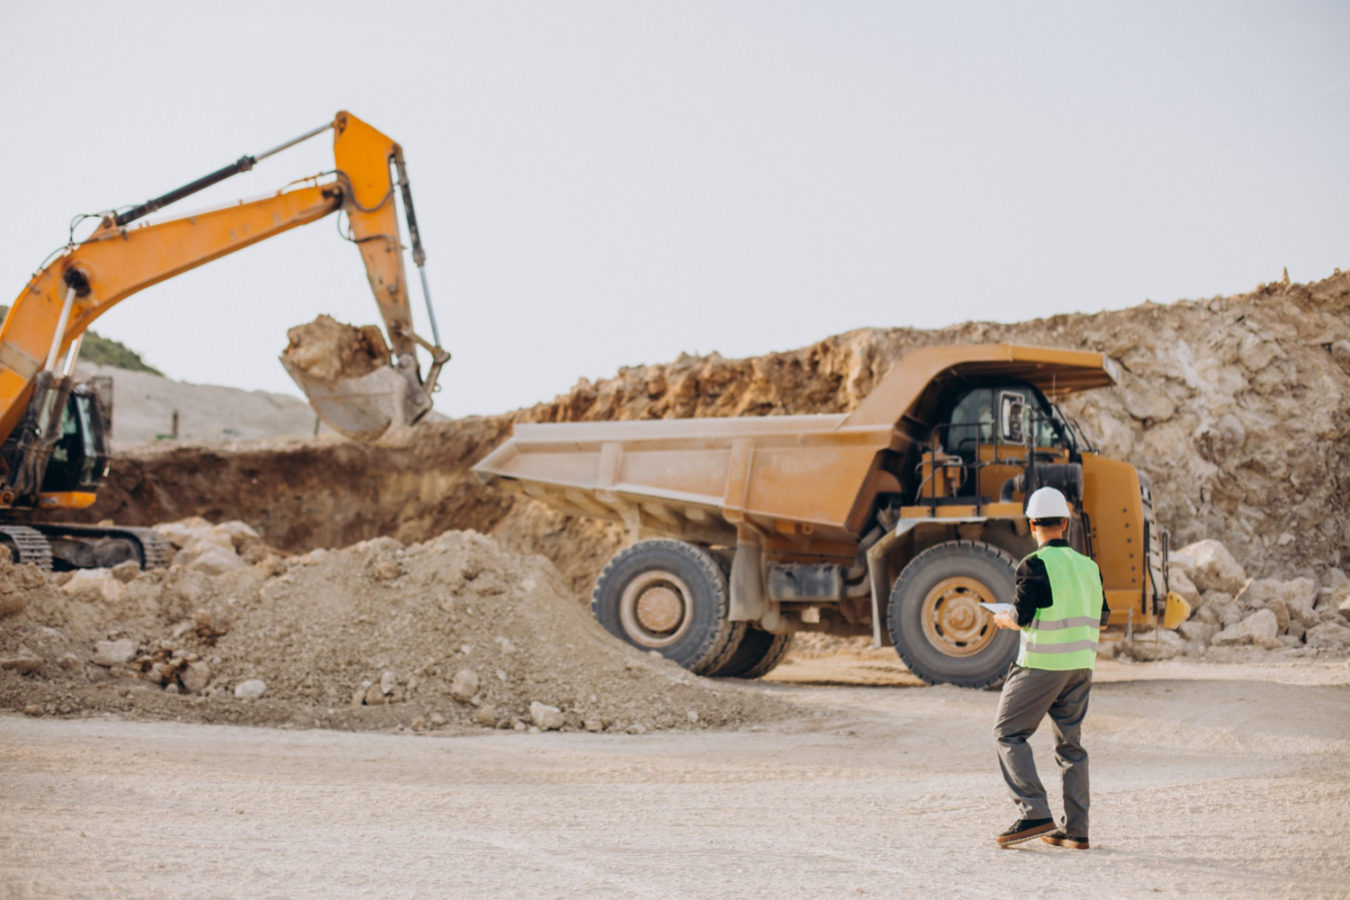 imagem mostra engenheiro em uma mina orientando o caminhão, ilustra um artigo sobre engenharia de minas